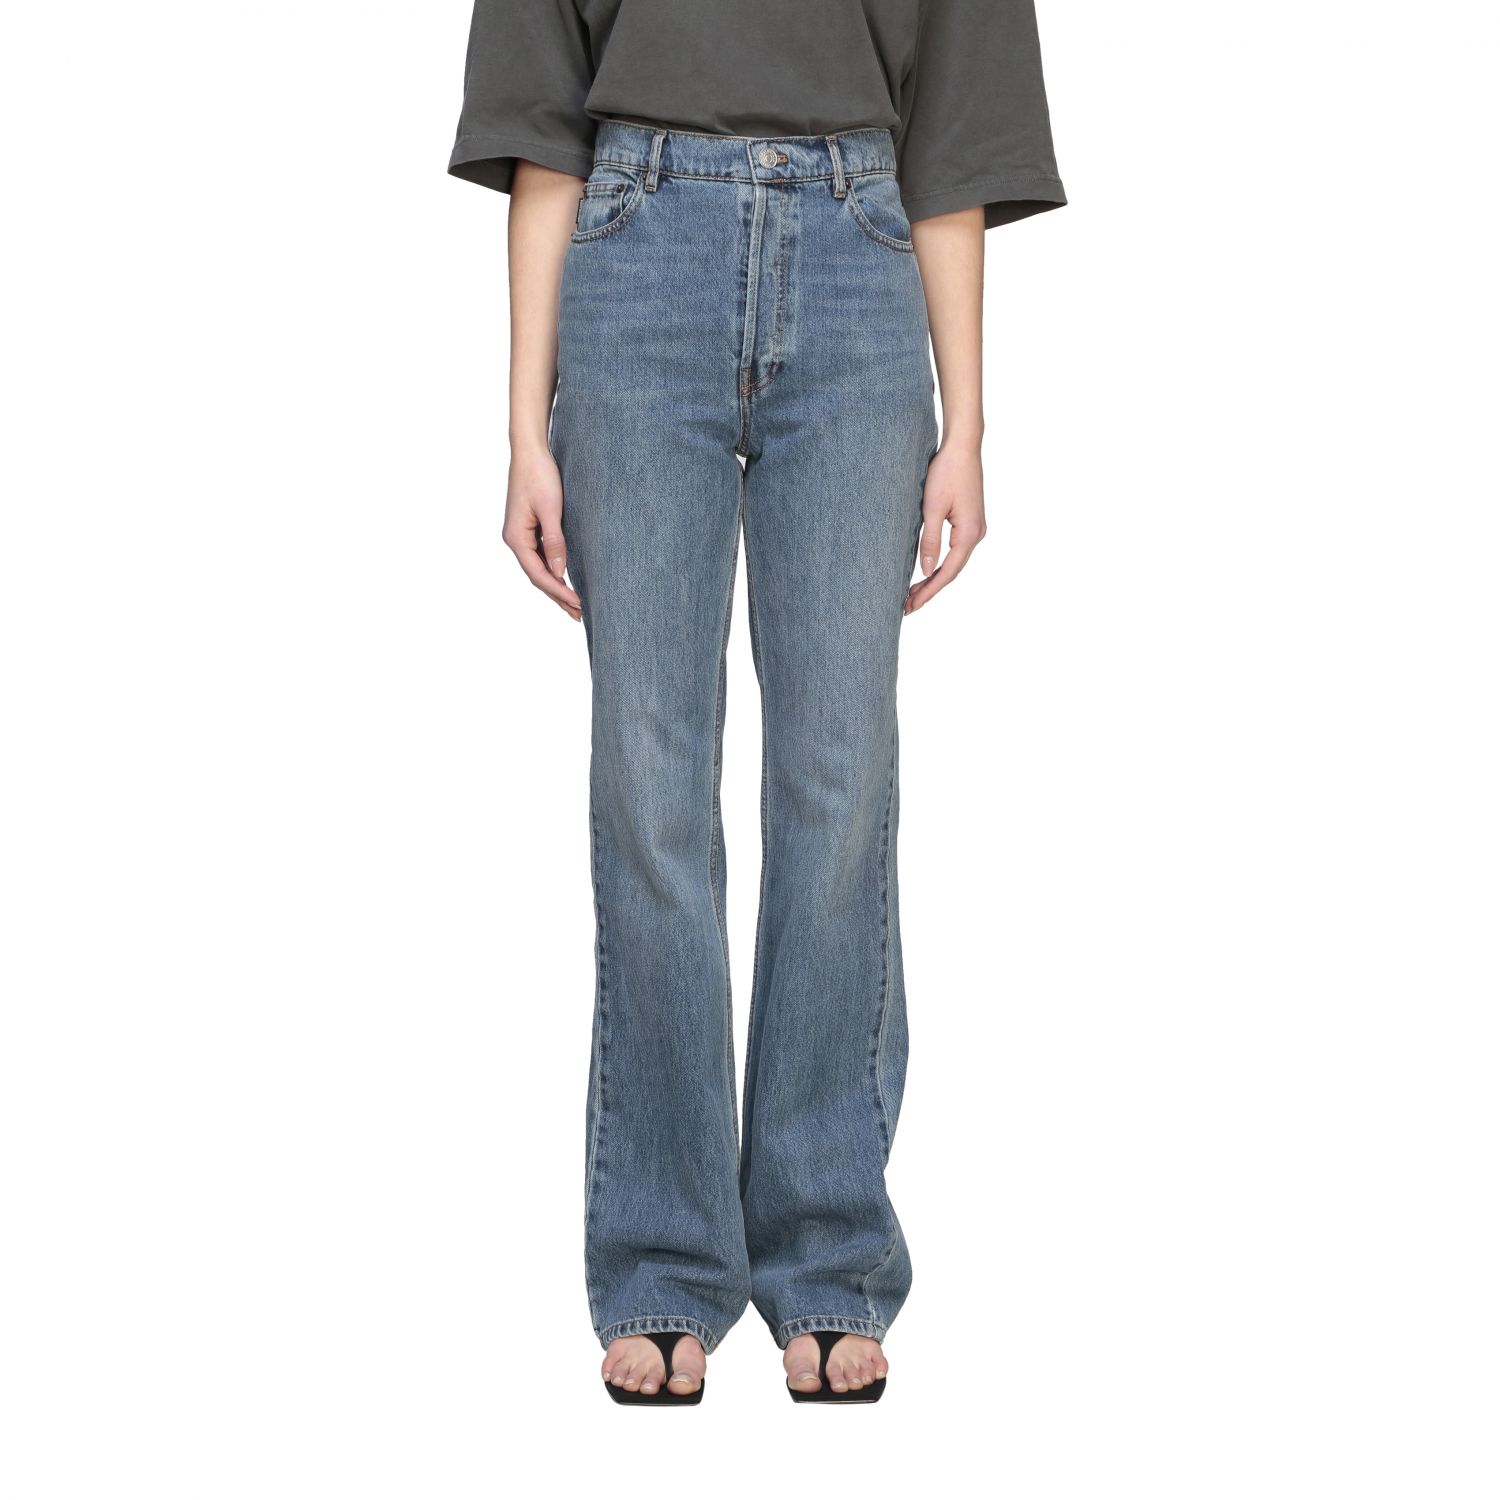 Balenciaga Outlet: flair 5-pocket jeans - Stone Washed | Balenciaga ...